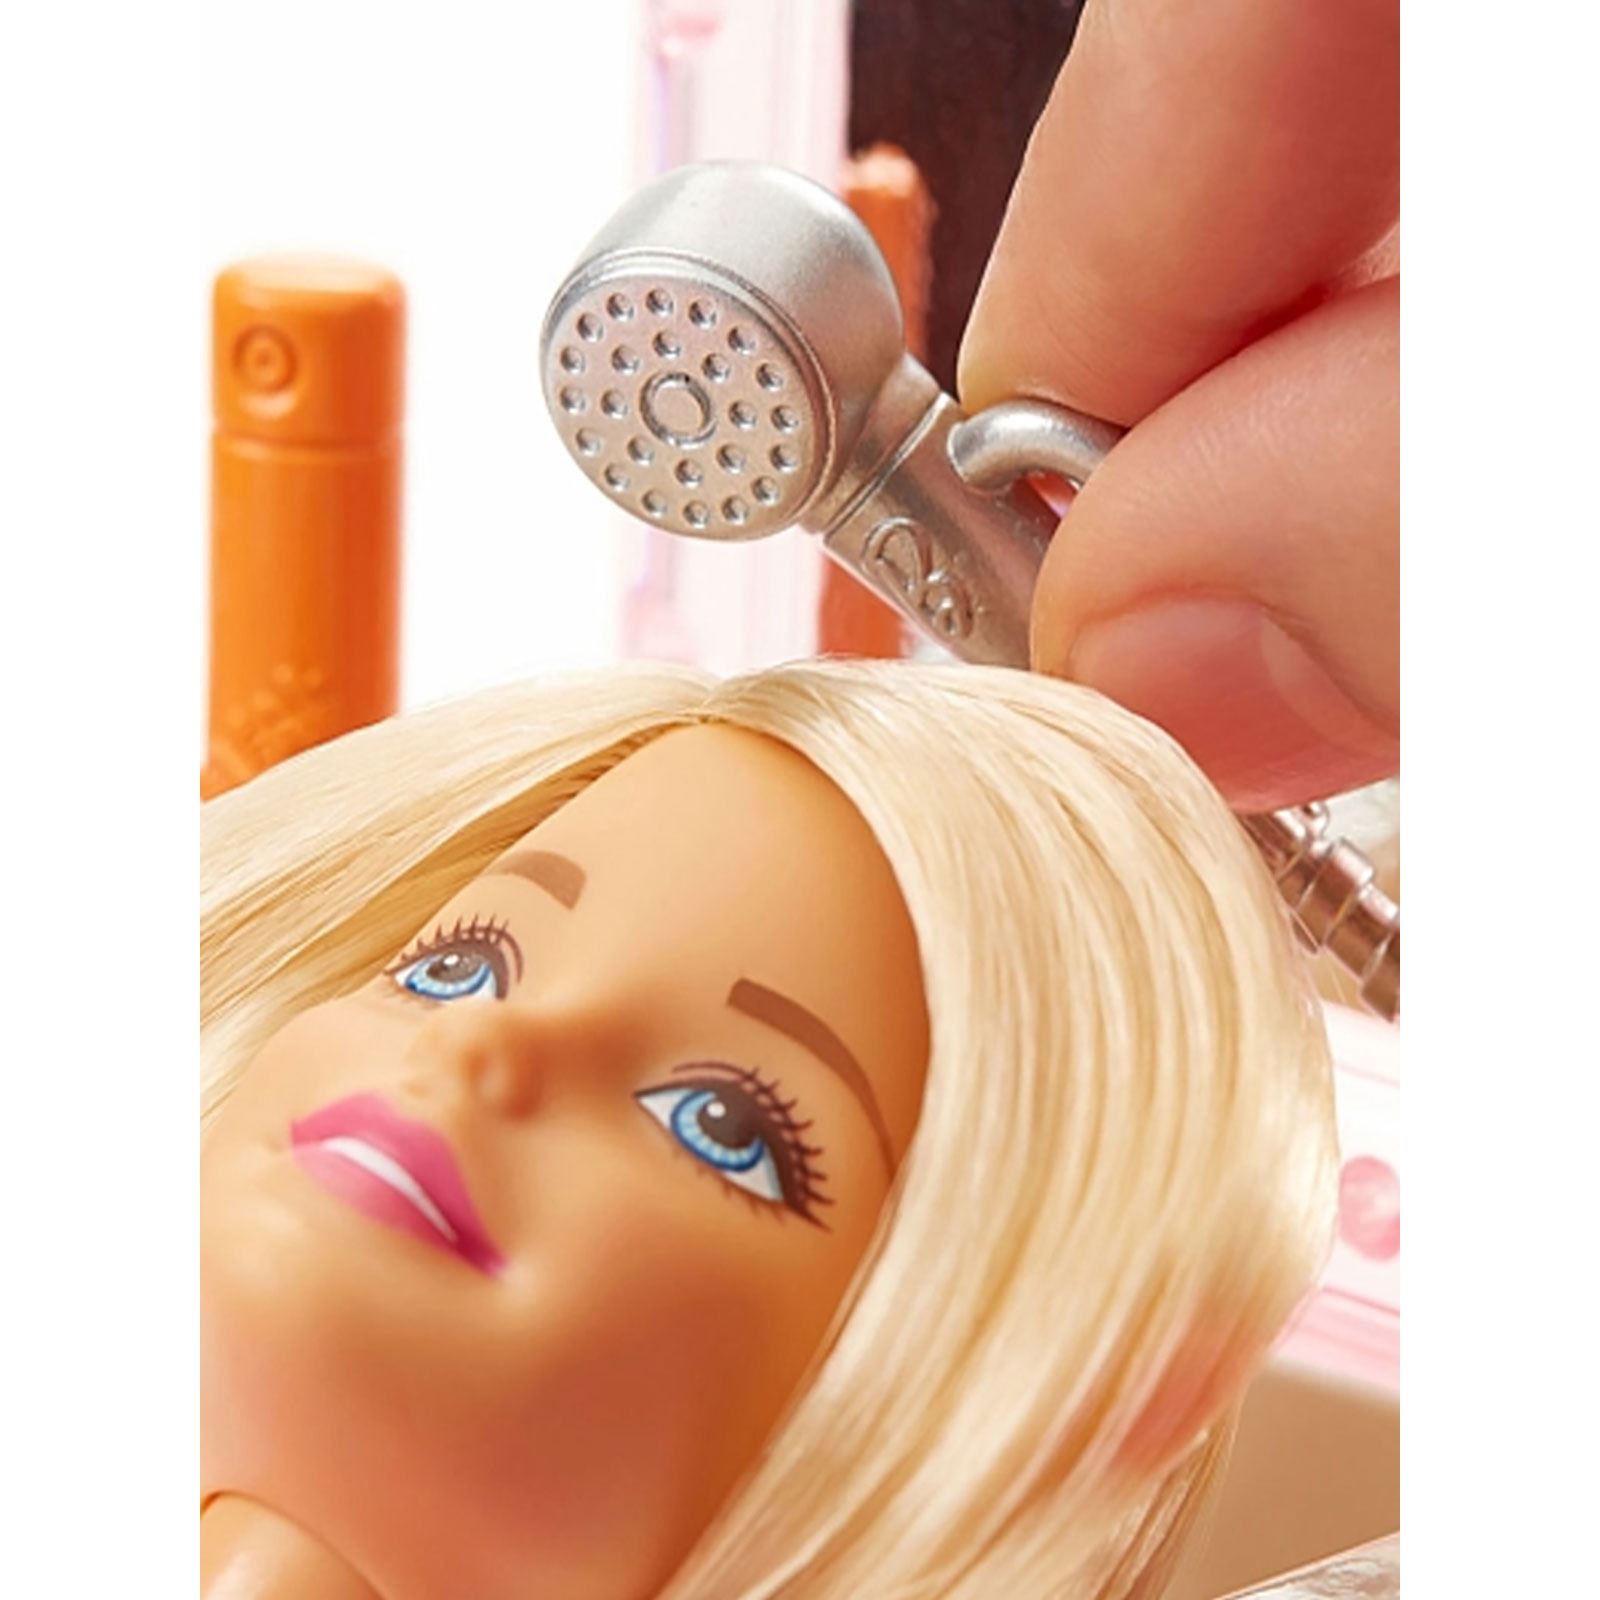 Barbie Bebek Ve Oda Setleri Serisi